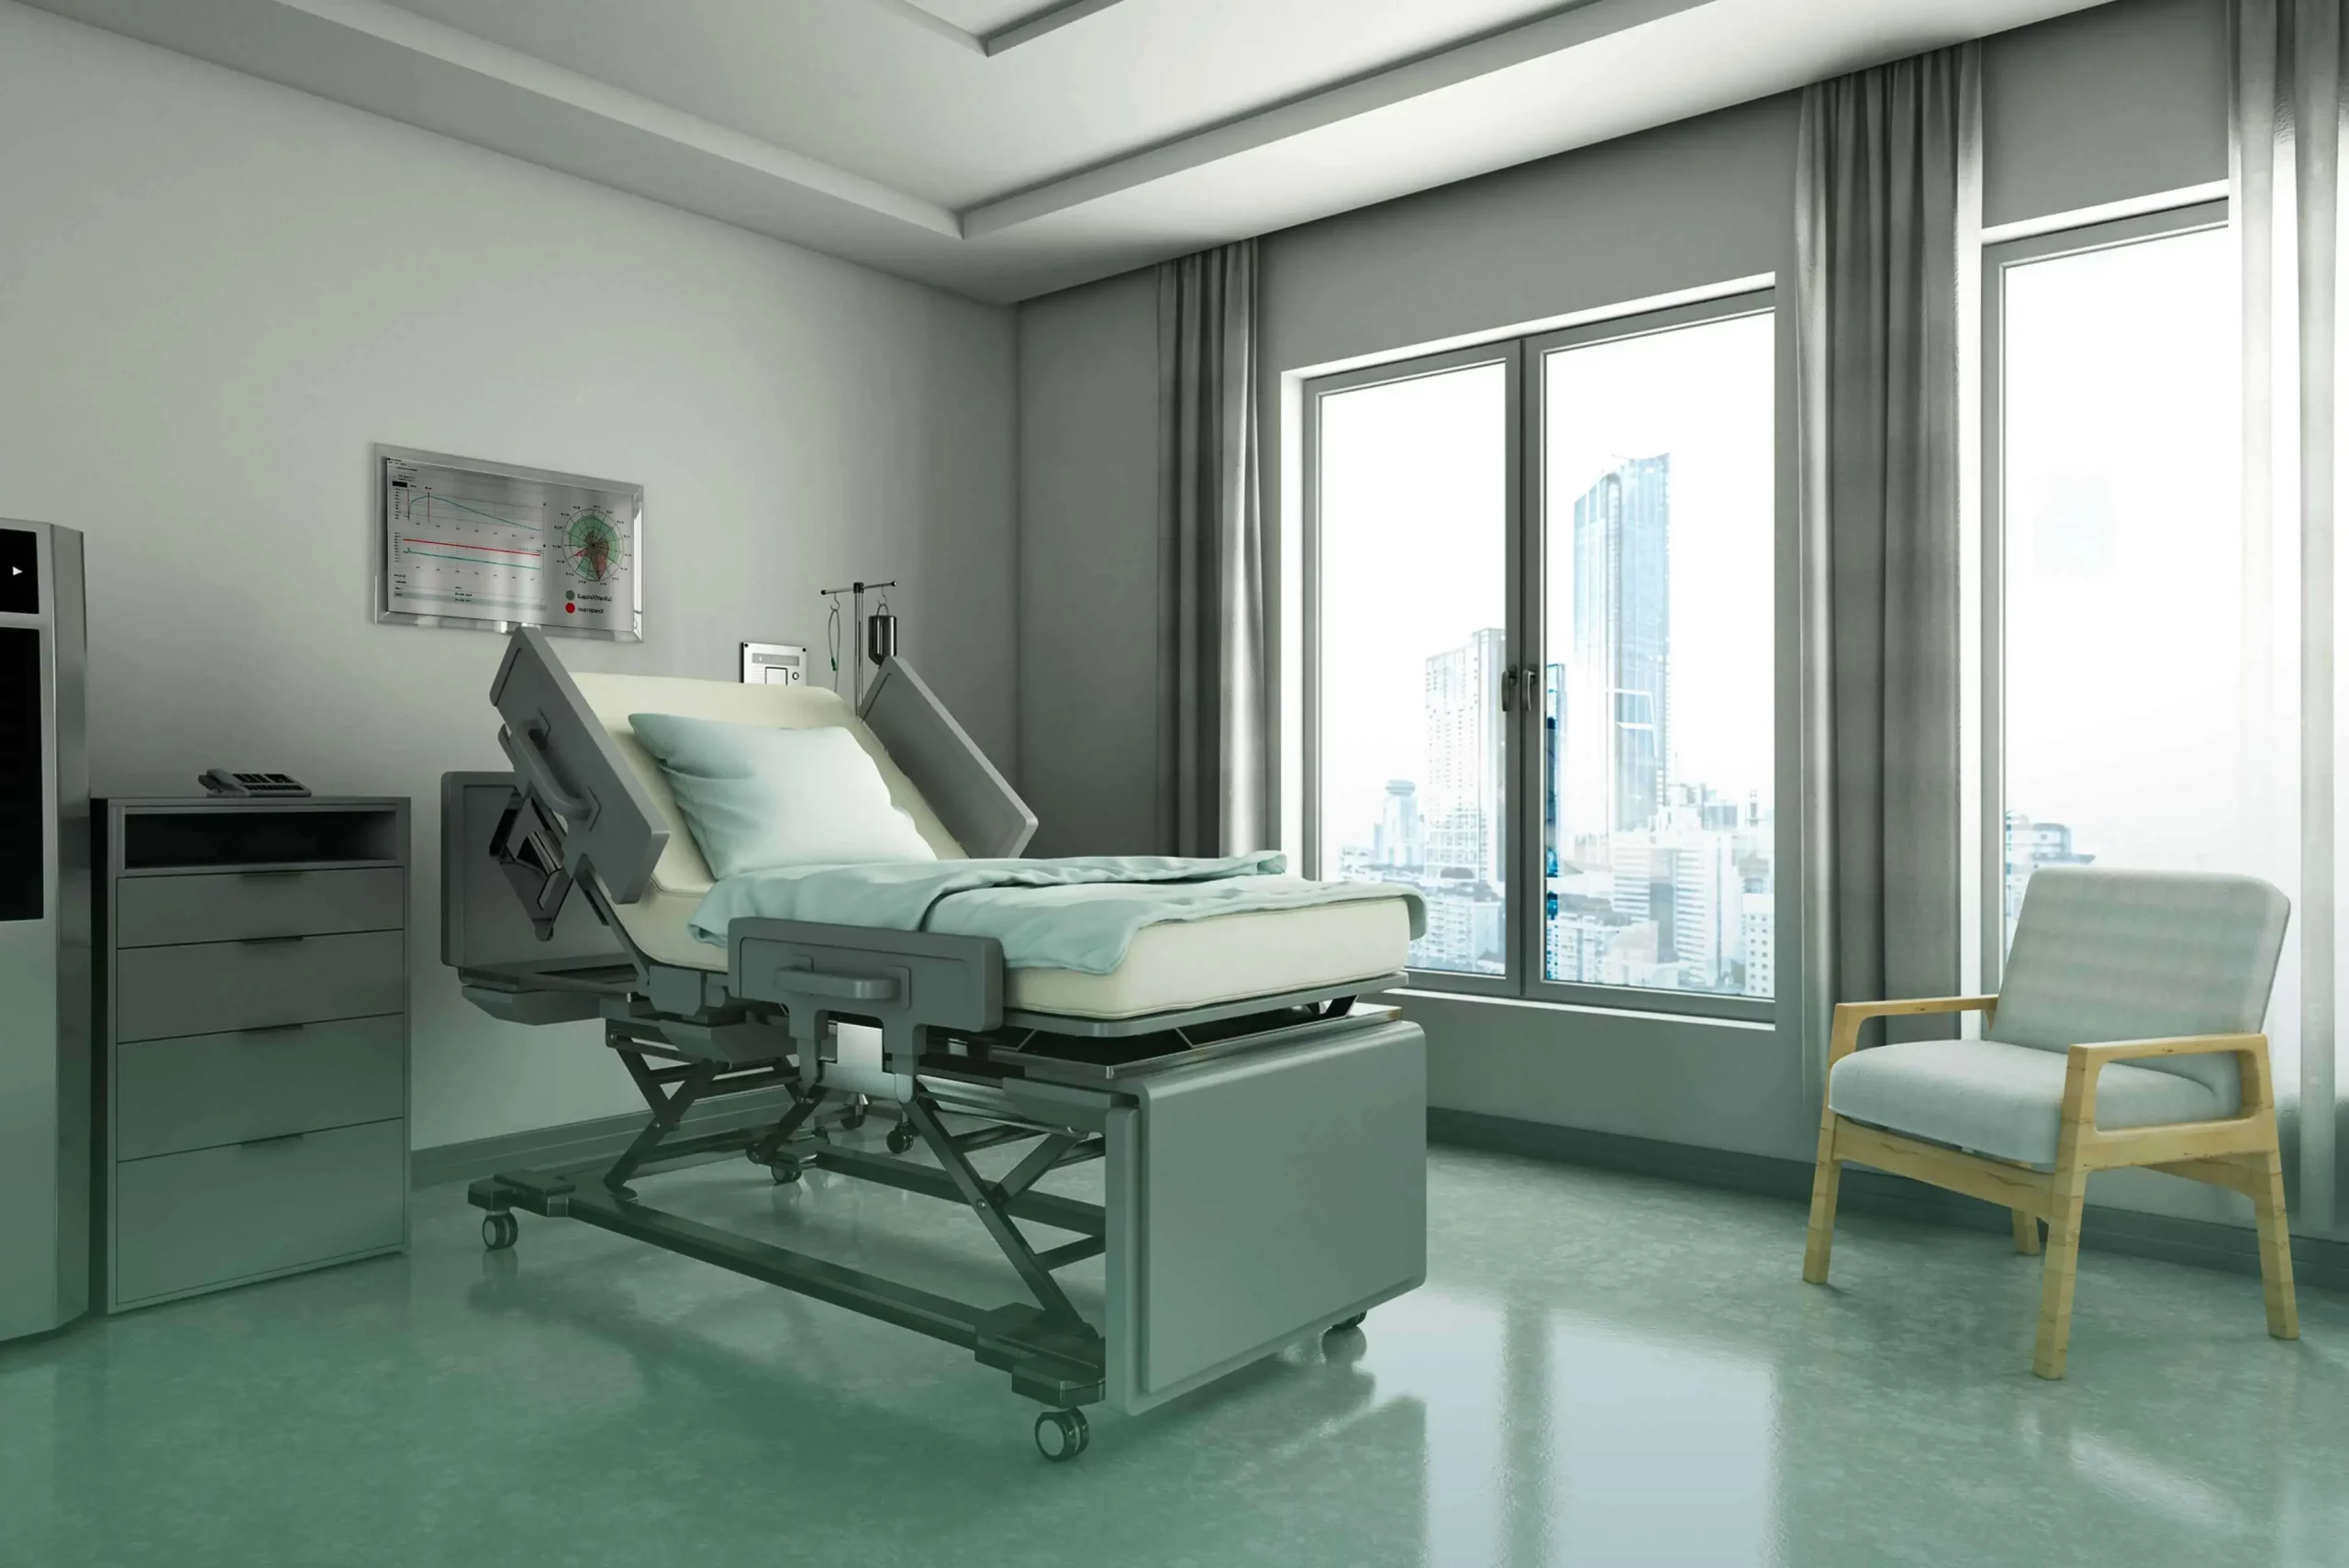 smart_hospital_beds